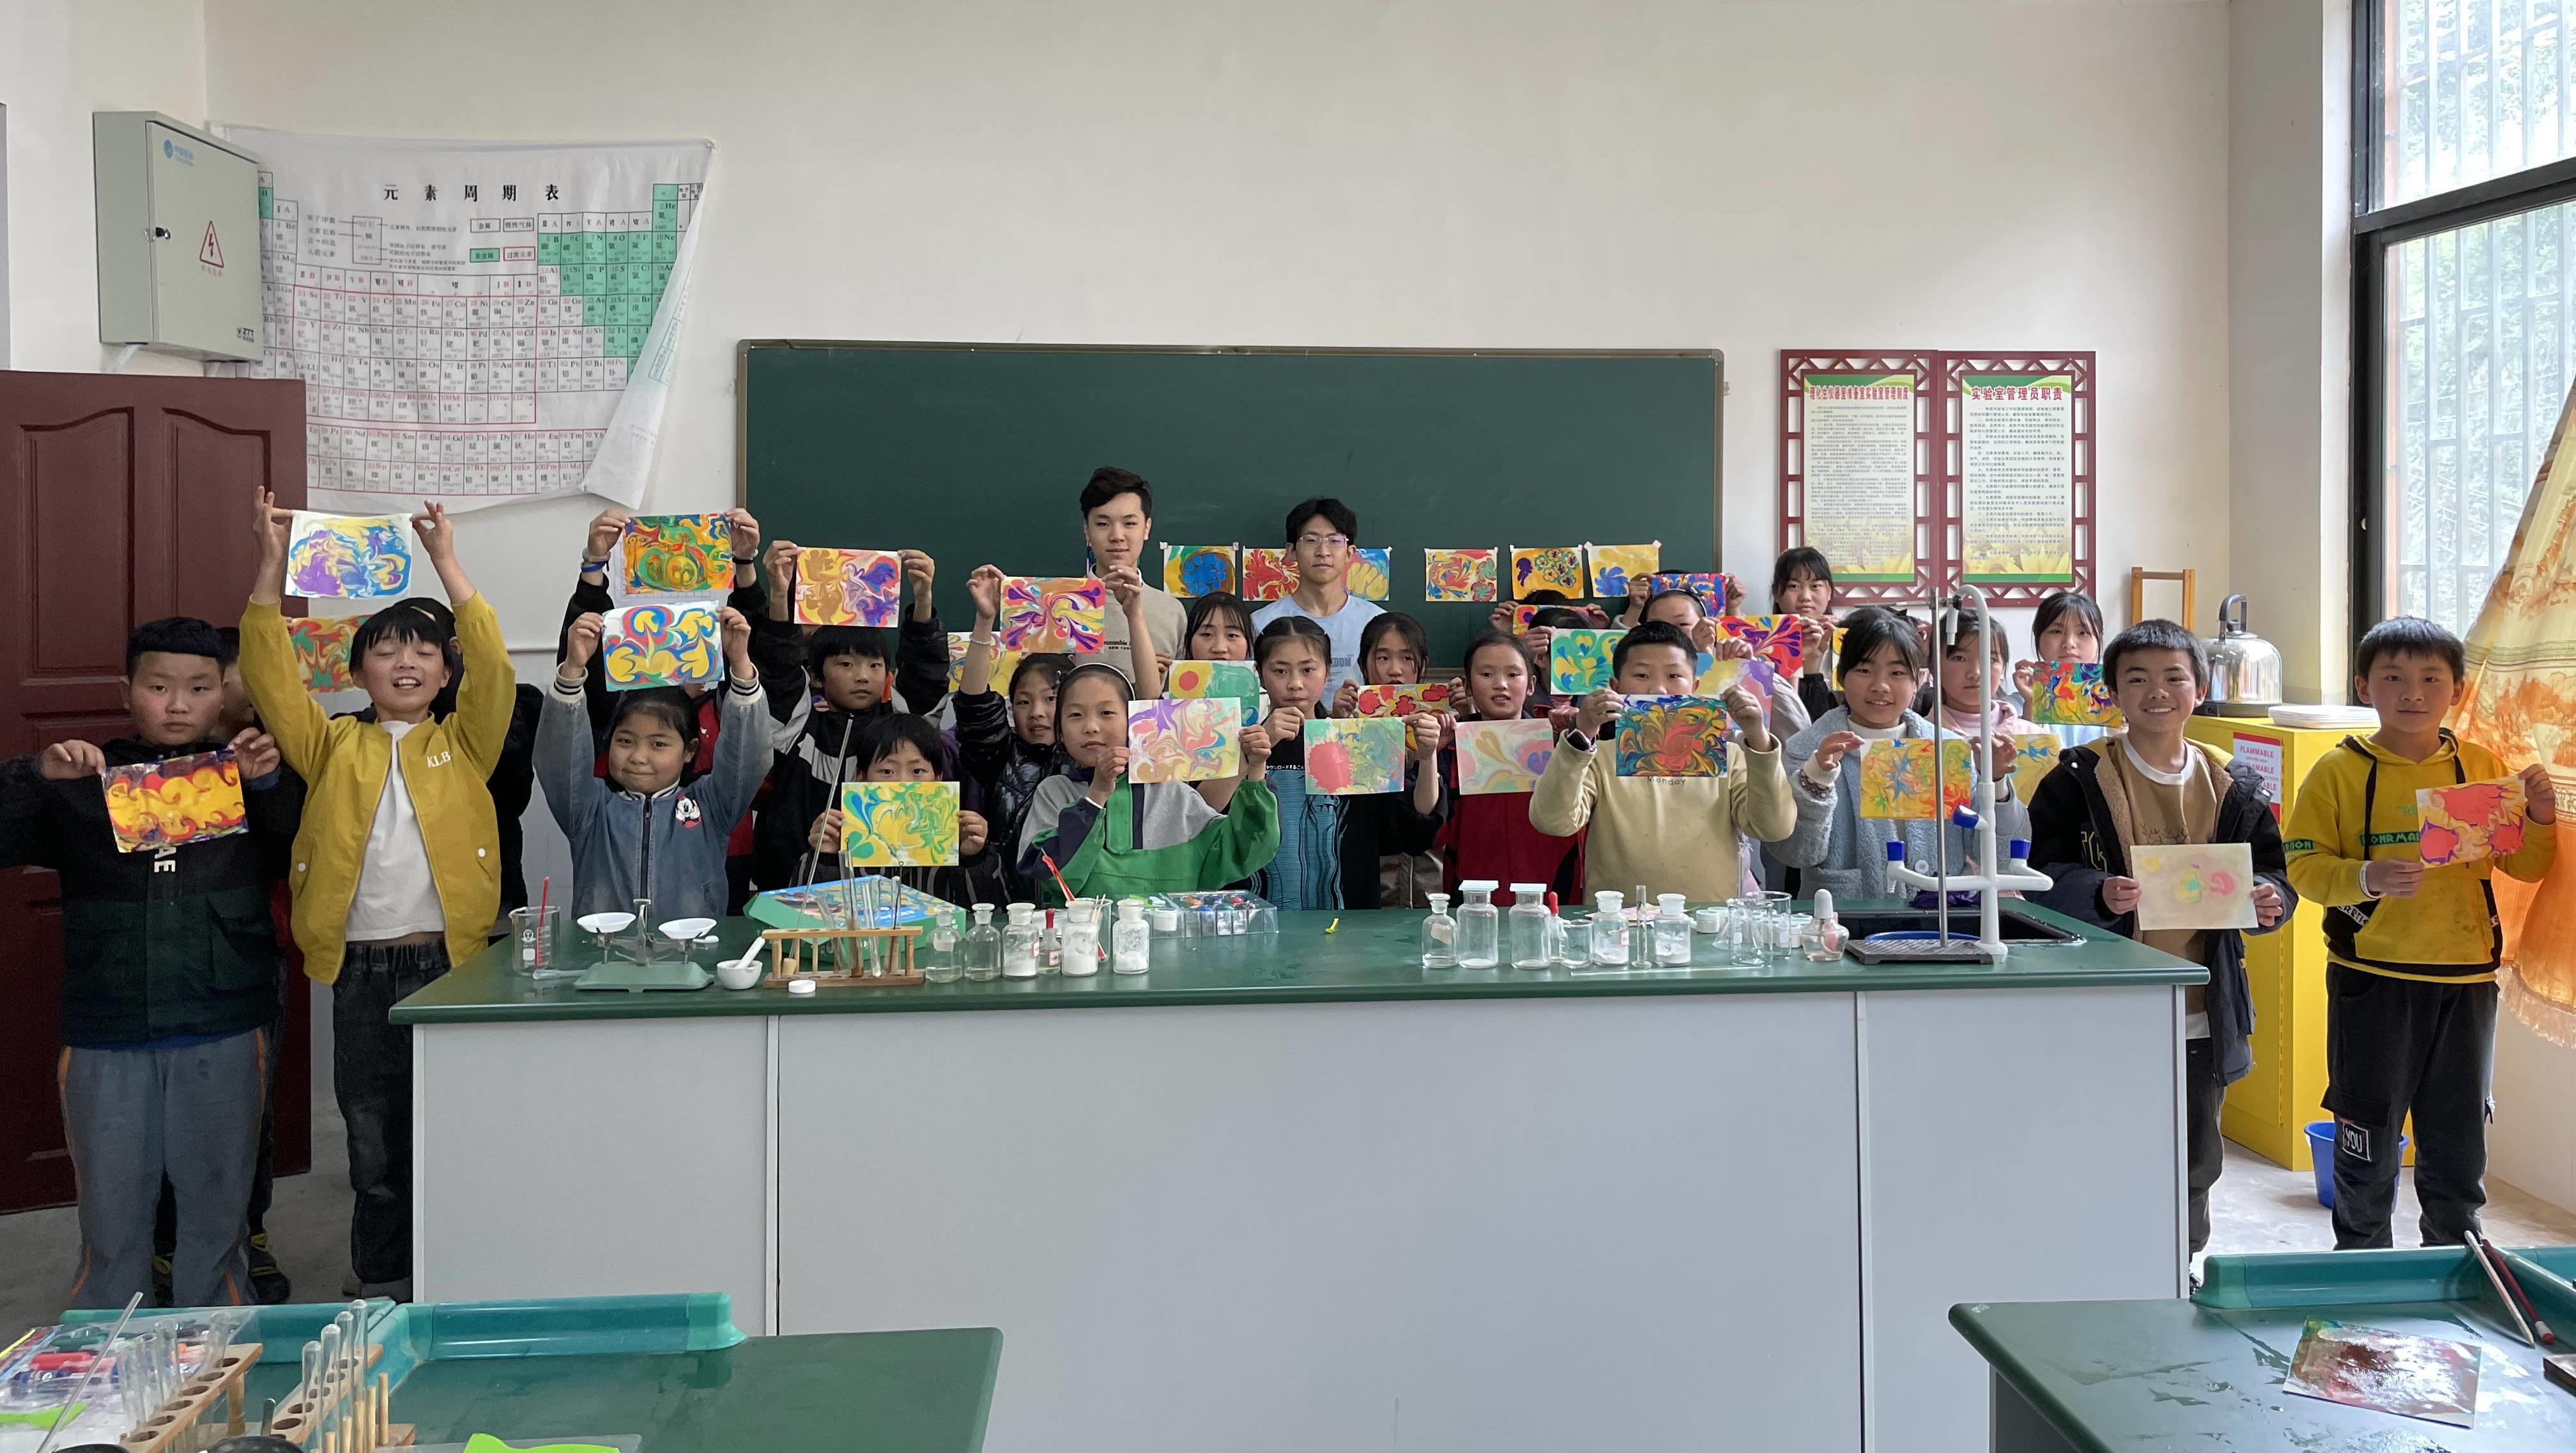 AiEr-Xishahe Education Sponsorship Project